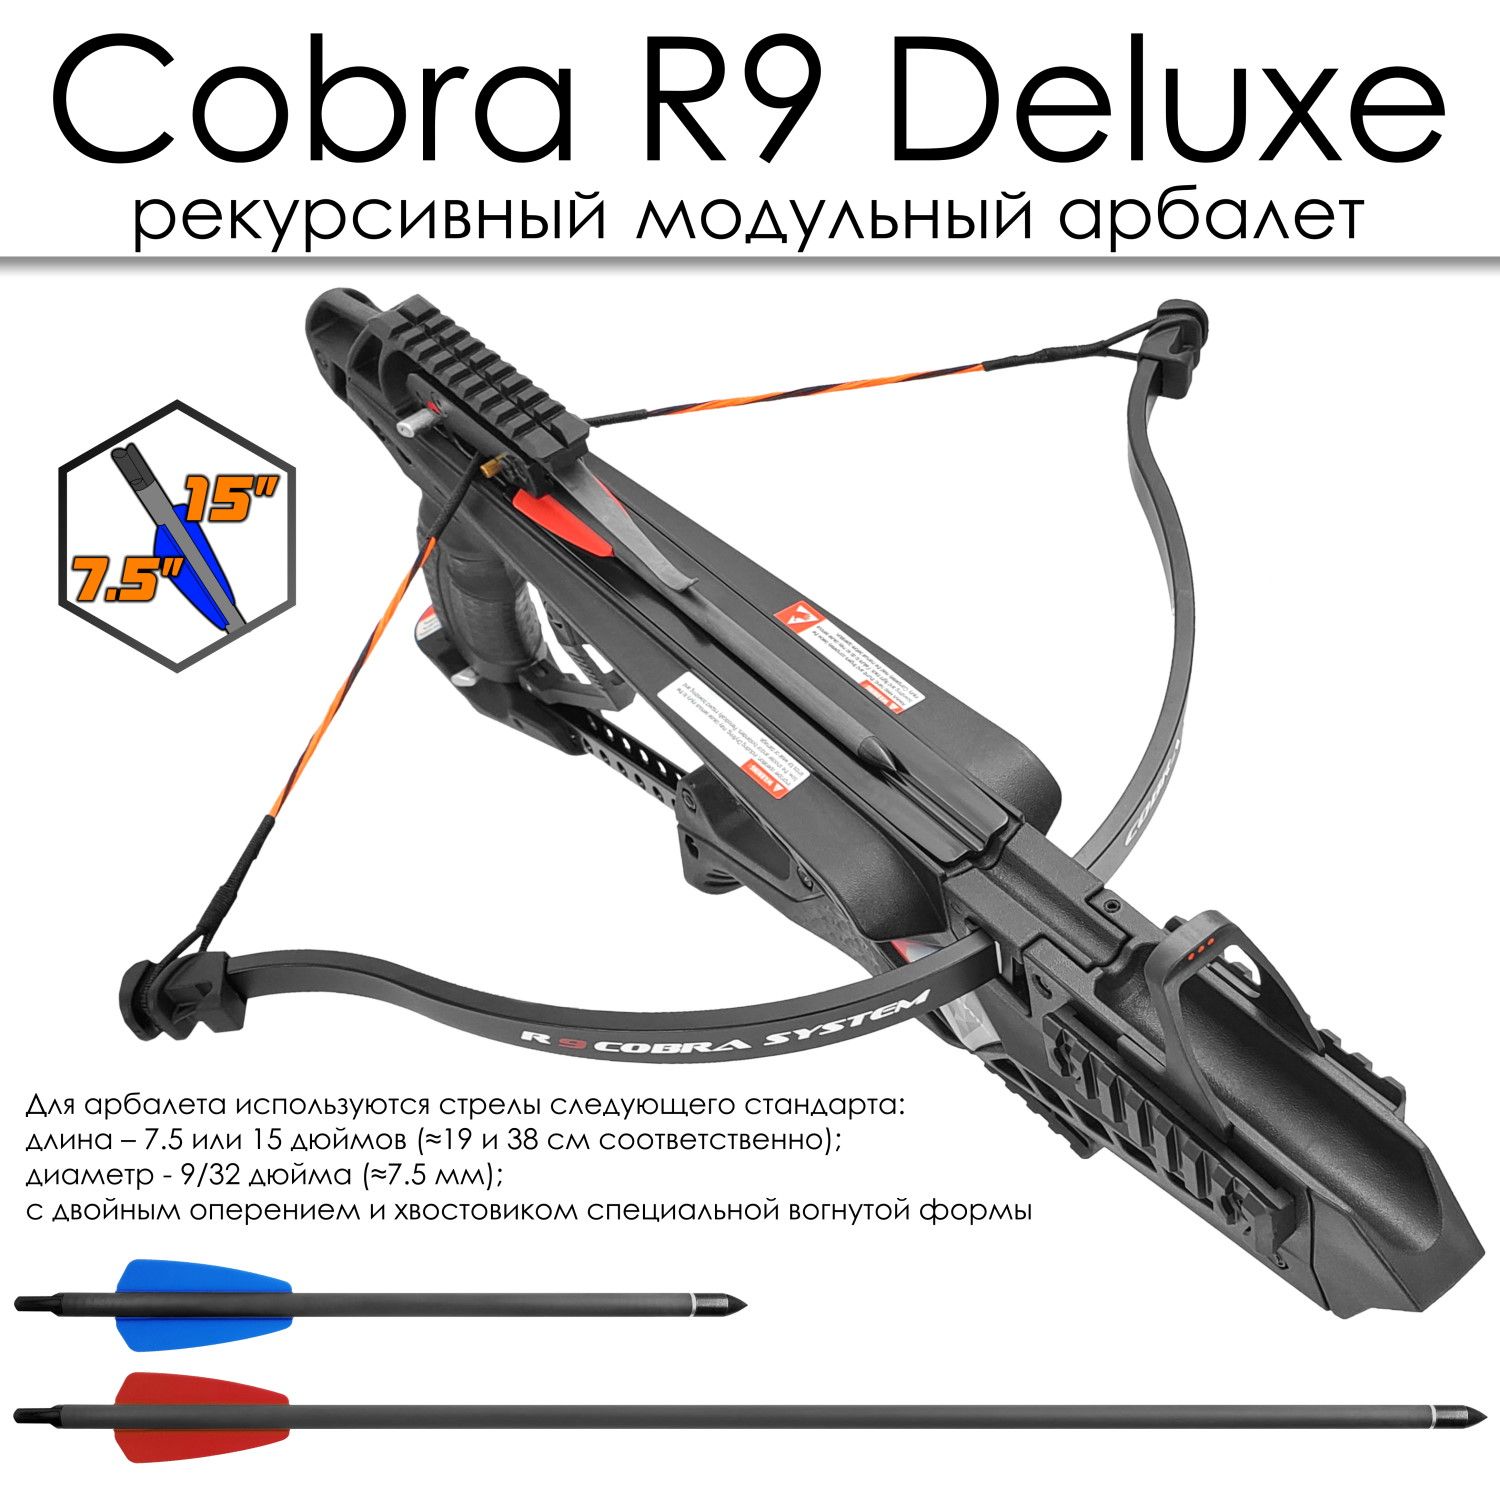 Cobra System r9 Deluxe. 43 Кгс для арбалетов. Запасные плечи для арбалета Ek Cobra System r9 (RX). Ek cobra system r9